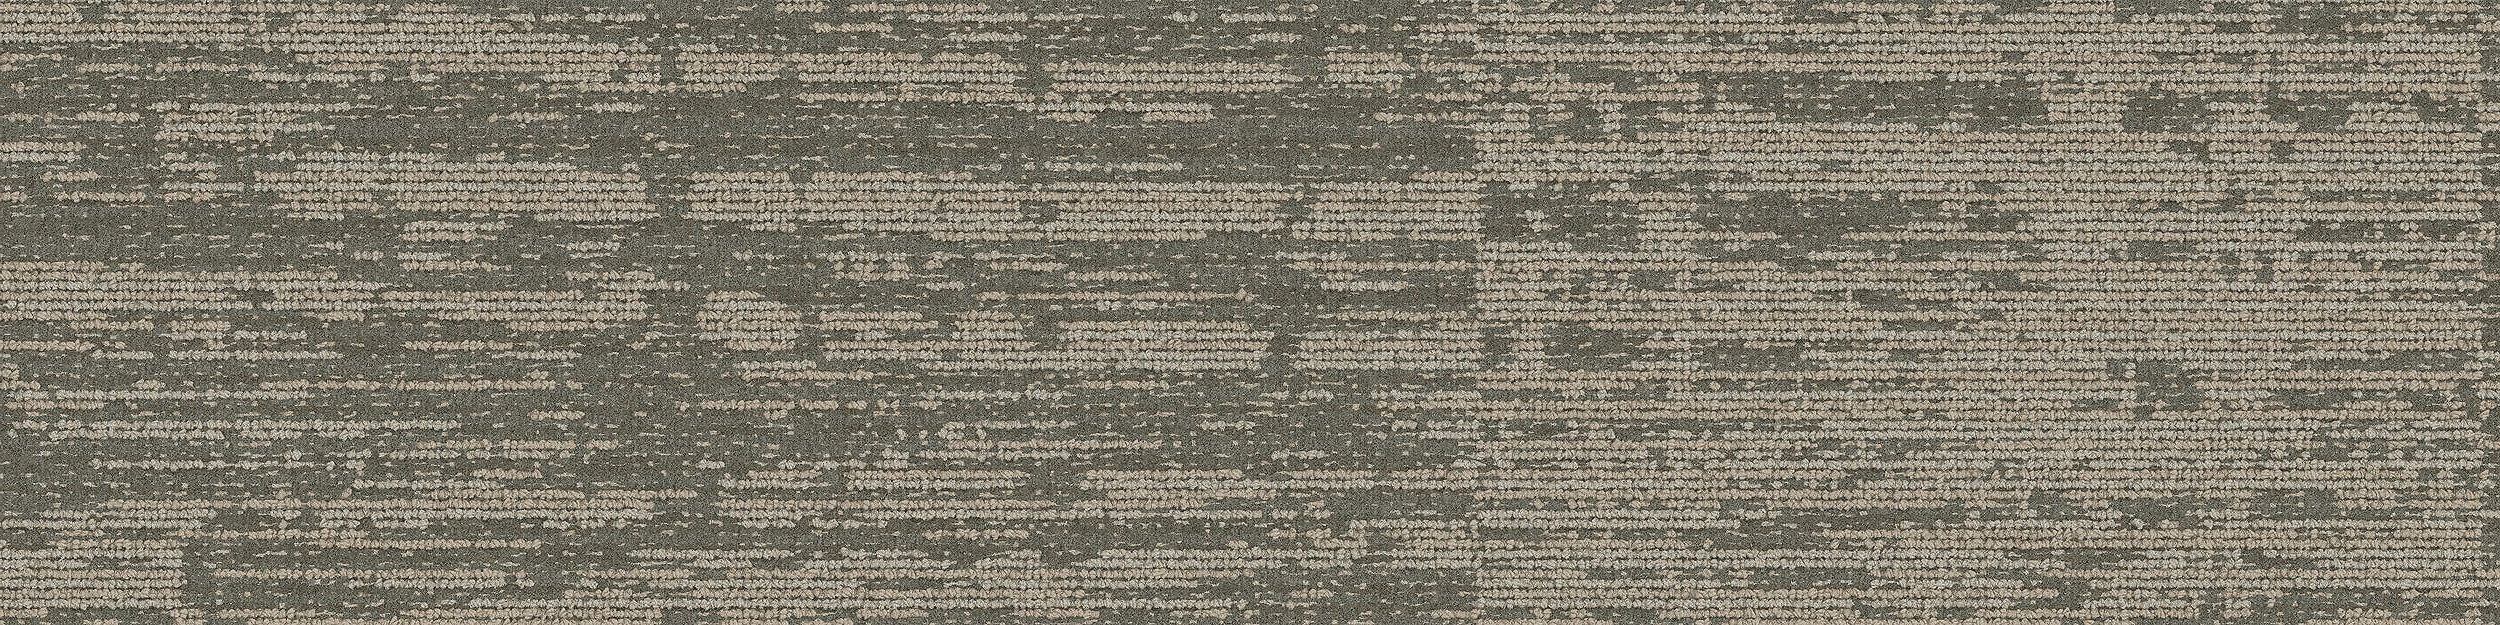 GN159 Carpet Tile In Pewter imagen número 2